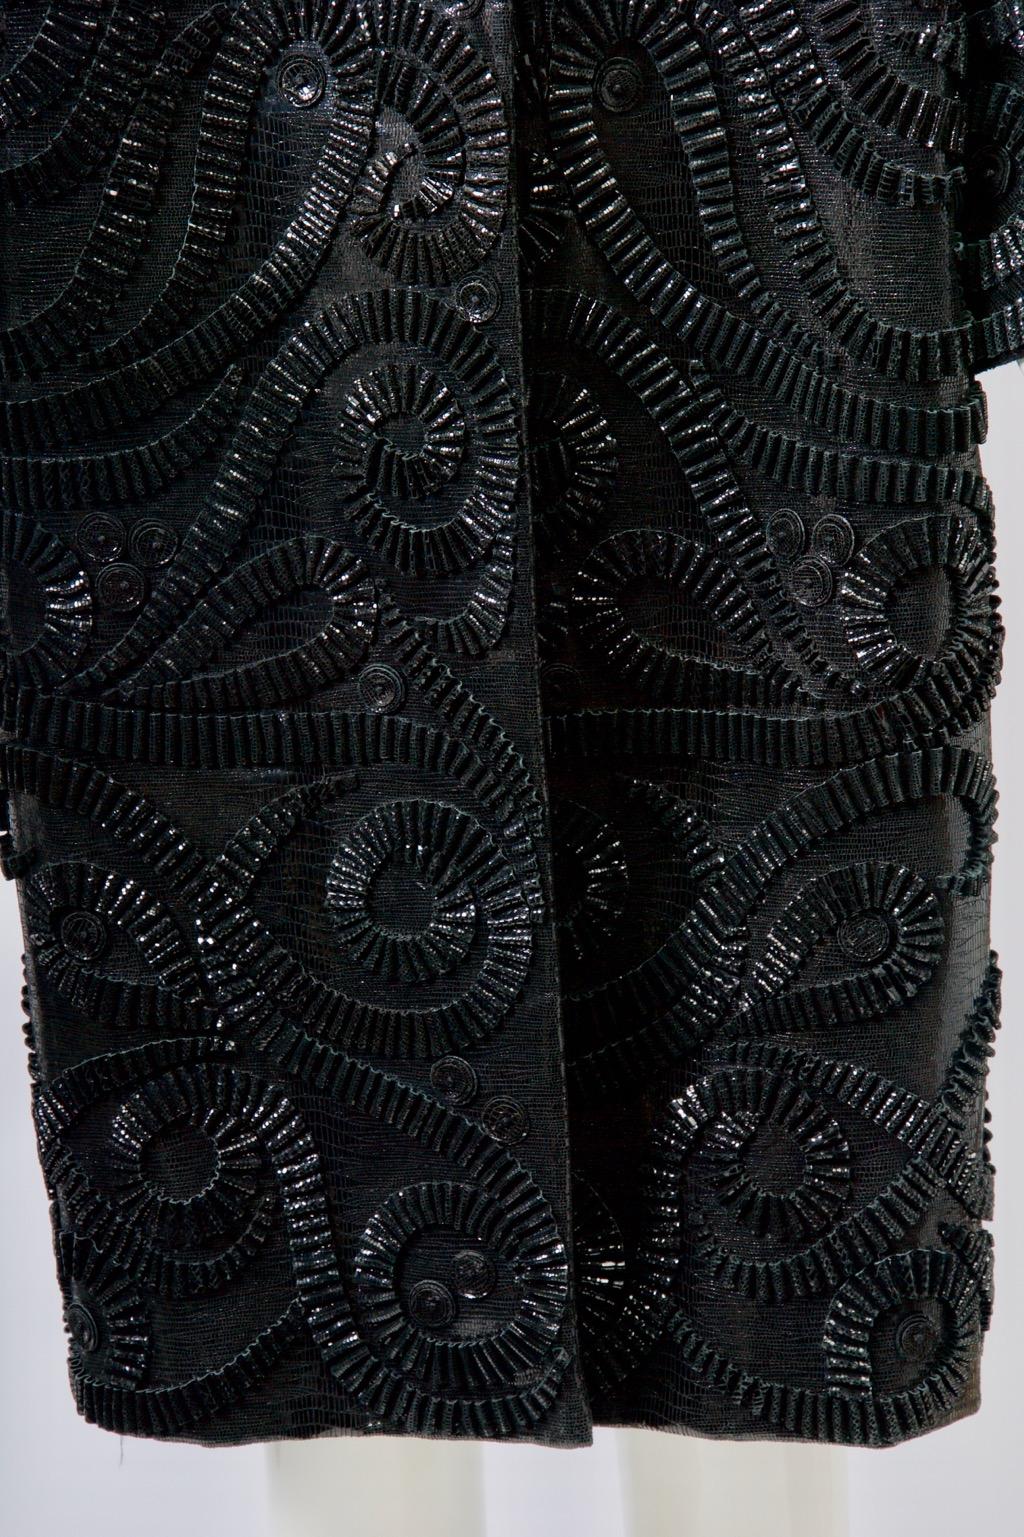 Schwarzer Lackmantel von Oscar de la Renta, vorne mit plissierten und gewirbelten Applikationen verziert, hinten undekoriert. Der Mantel hat einen einfachen, geraden Schnitt, ist kragenlos und hat handtellergroße Dolman-Ärmel. Eine strukturierte,